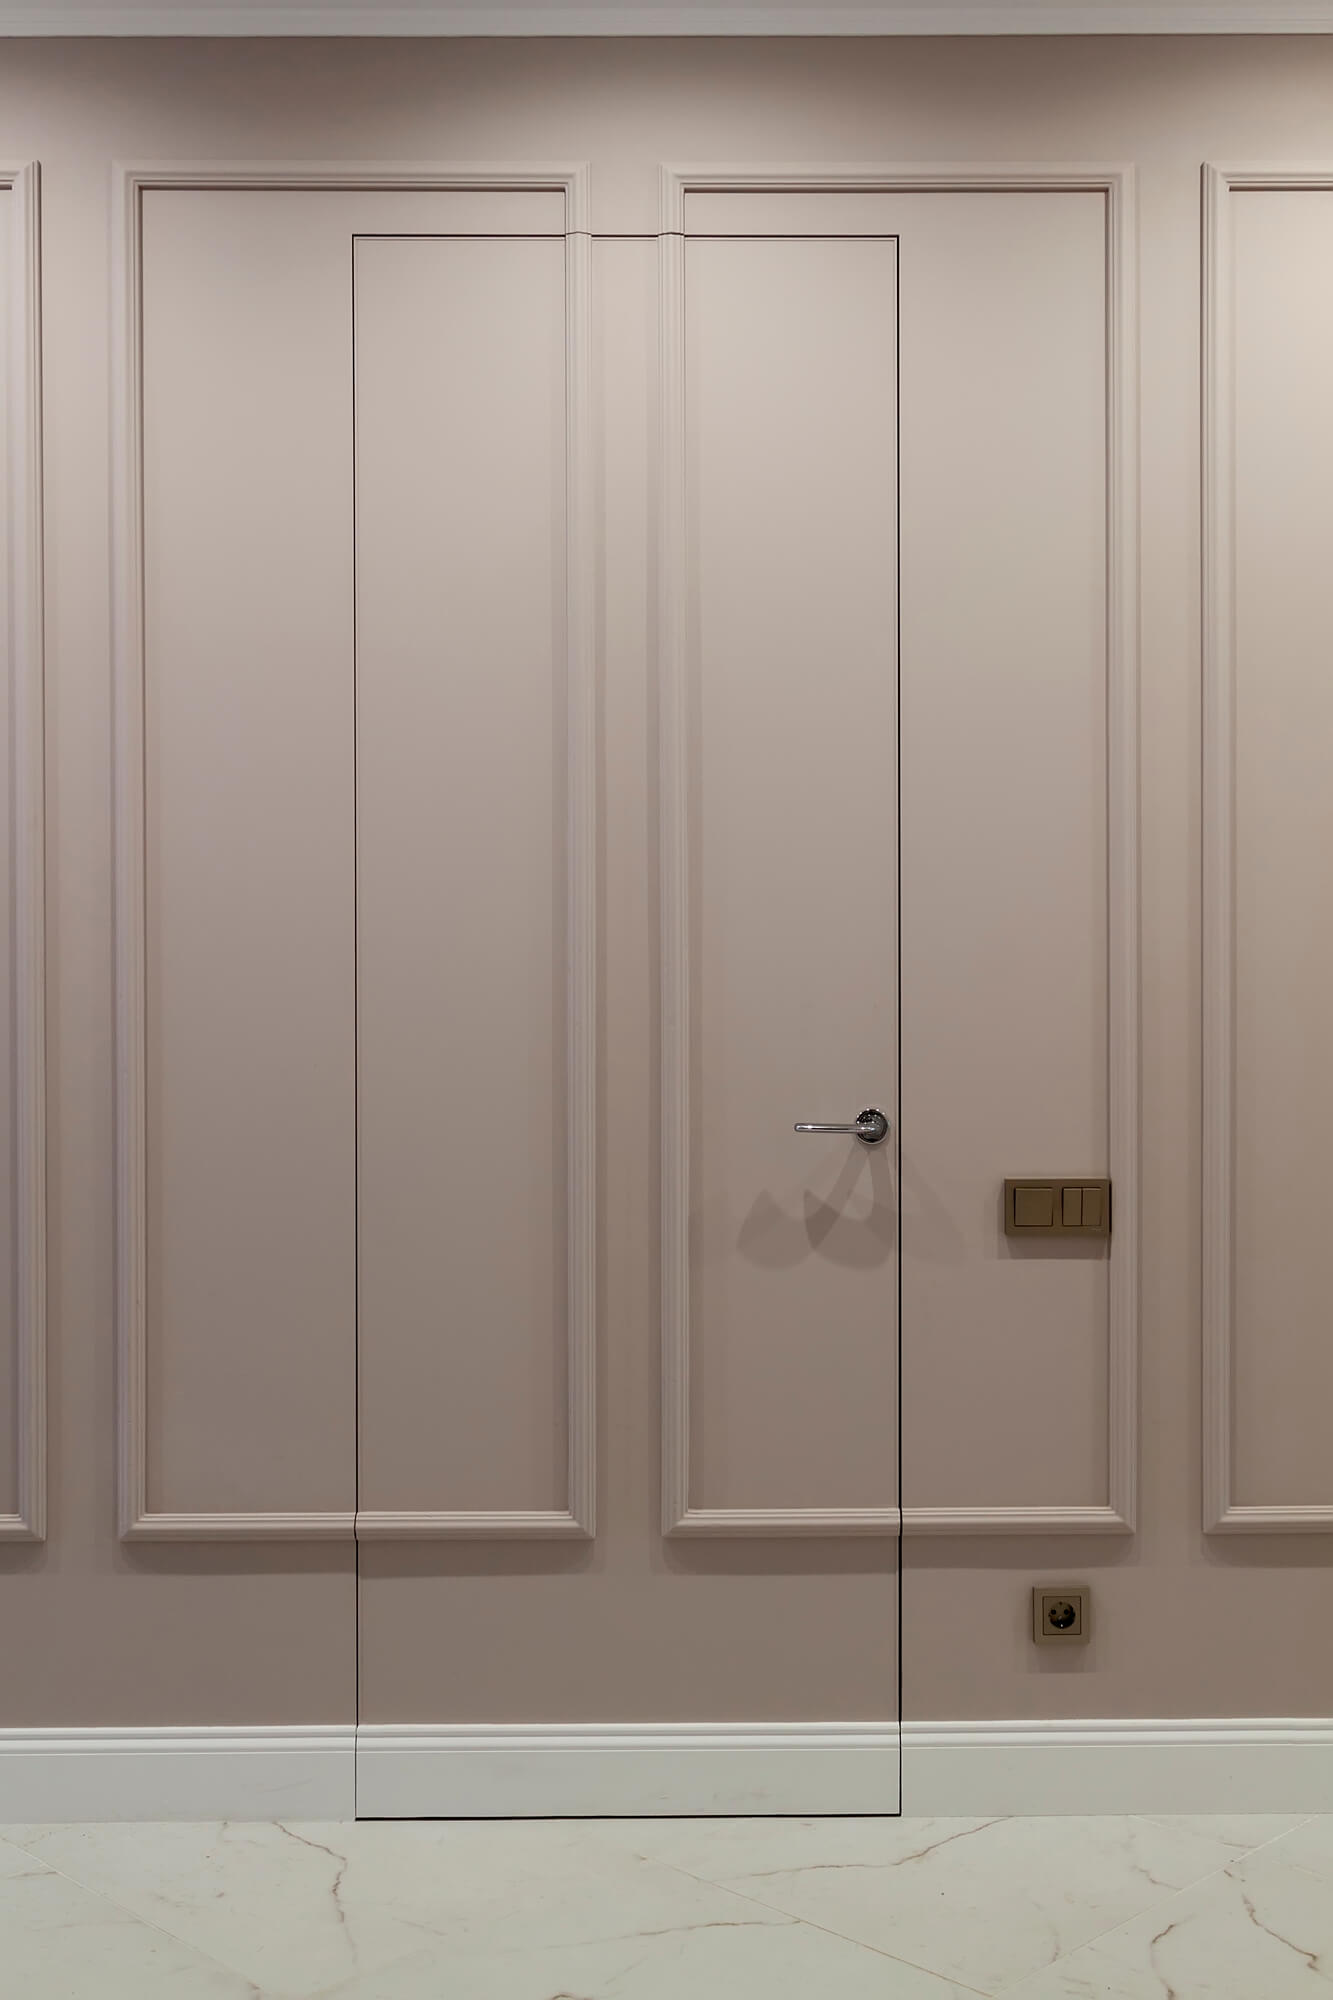 Drzwi ukryte w ścianie – jak wybrać takie drzwi wewnętrzne?